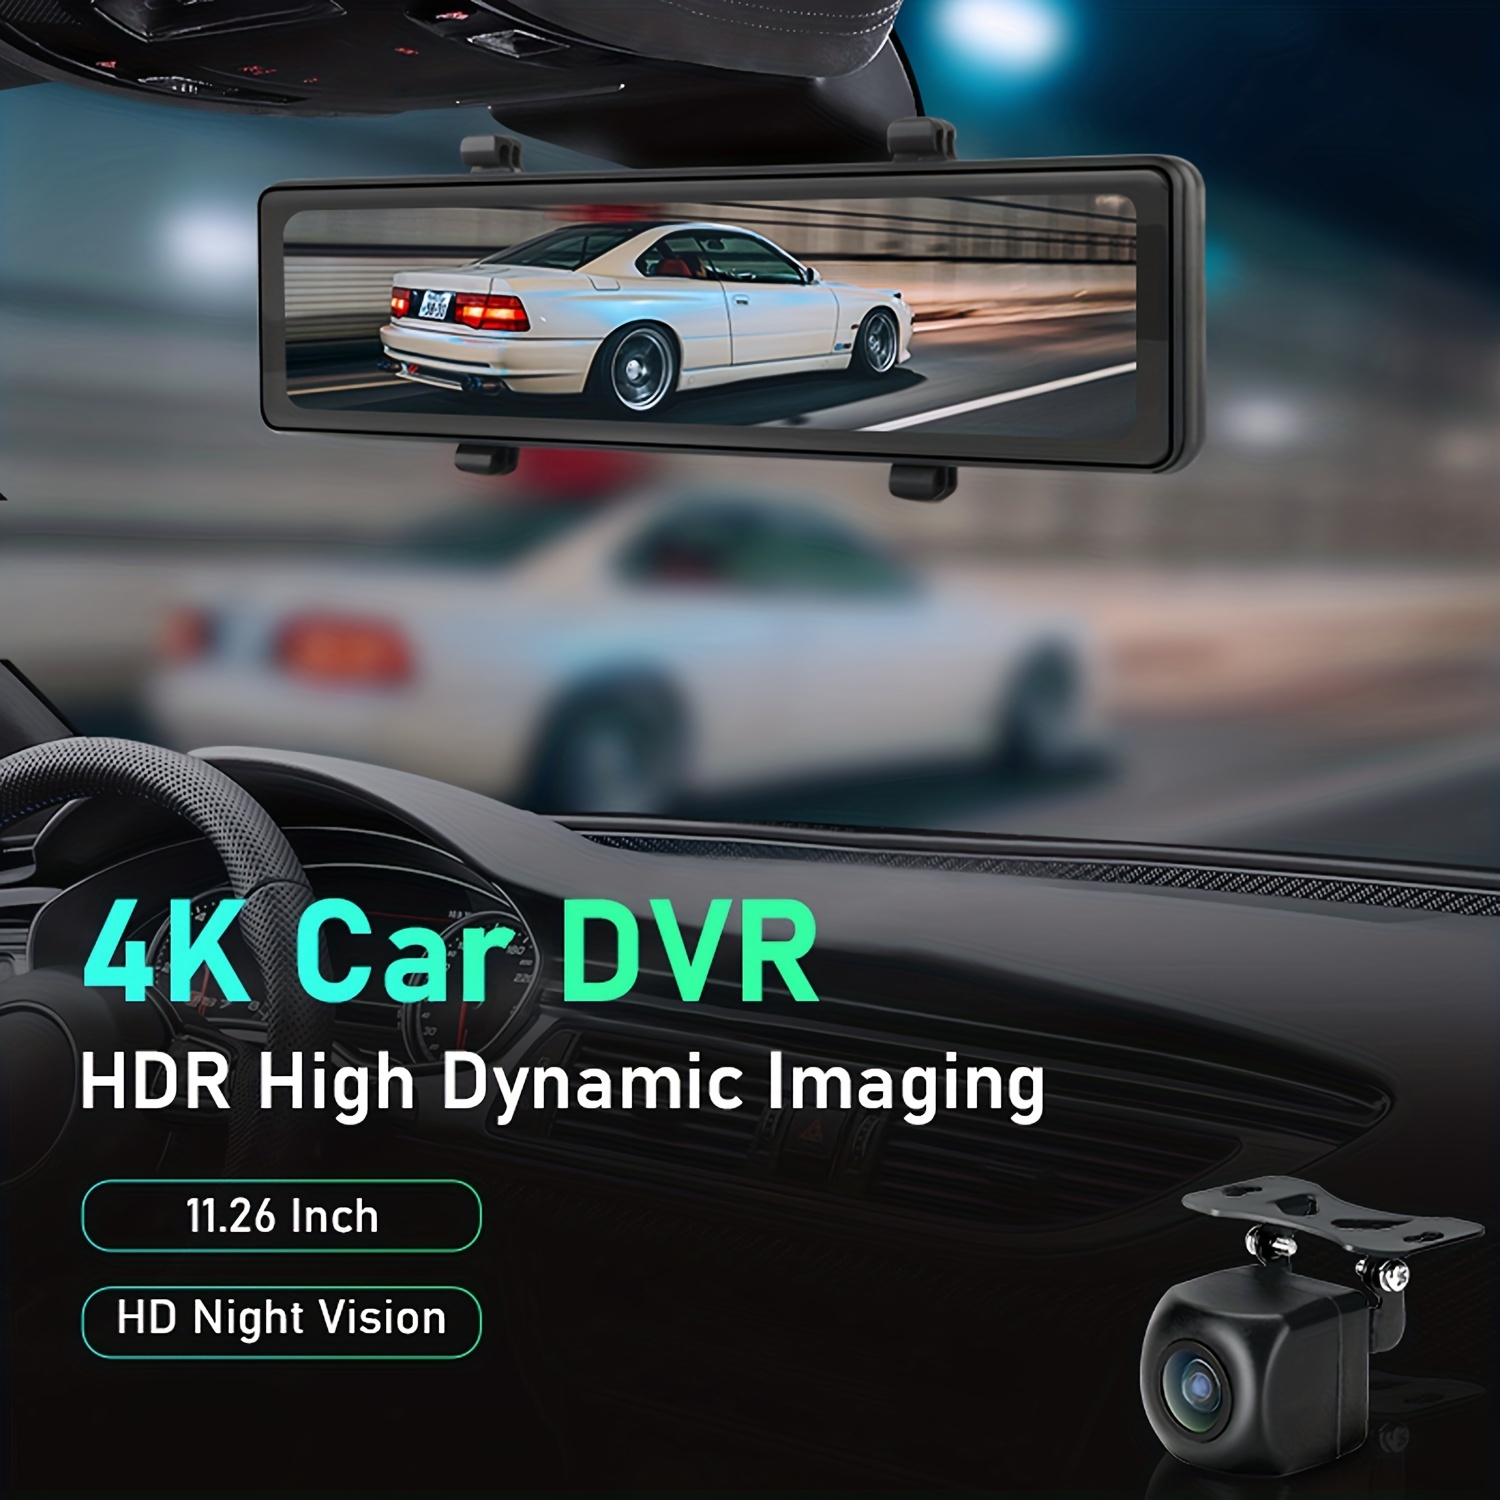 4k Dual Dash Cam Car Front Rear Camera Built in Gps Wifi - Temu